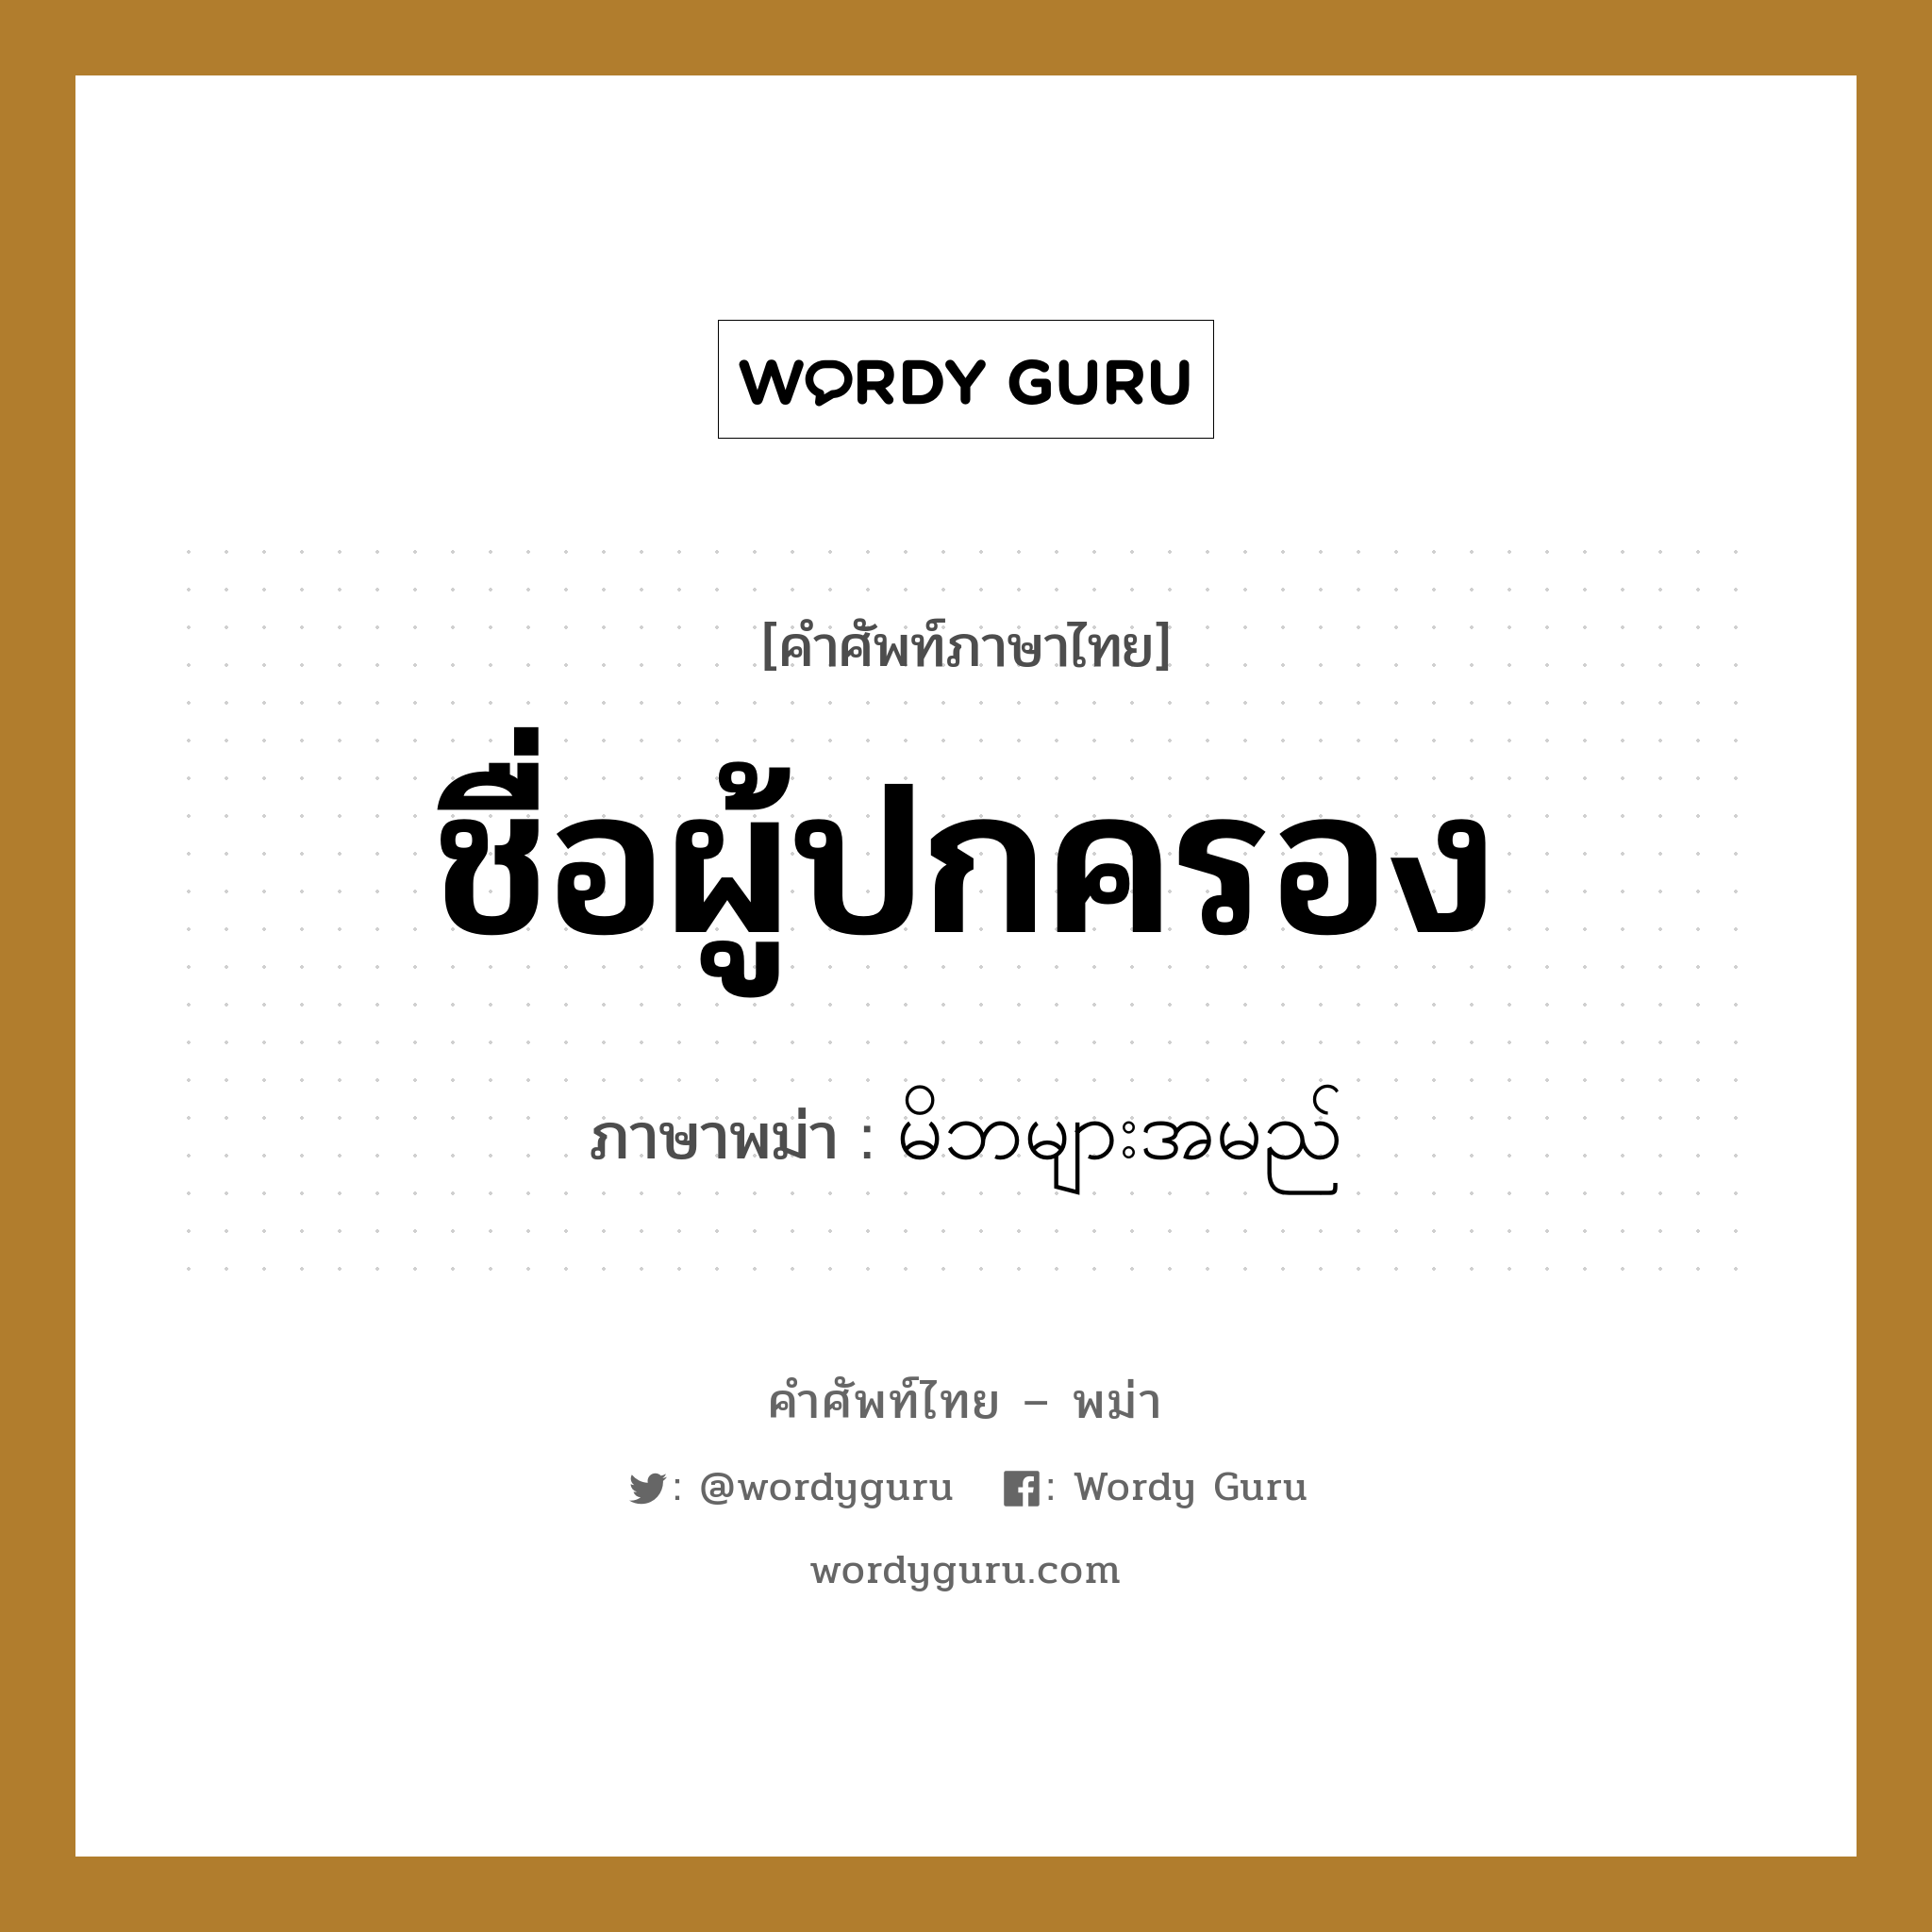 ชื่อผู้ปกครอง ภาษาพม่าคืออะไร, คำศัพท์ภาษาไทย - พม่า ชื่อผู้ปกครอง ภาษาพม่า မိဘများအမည်